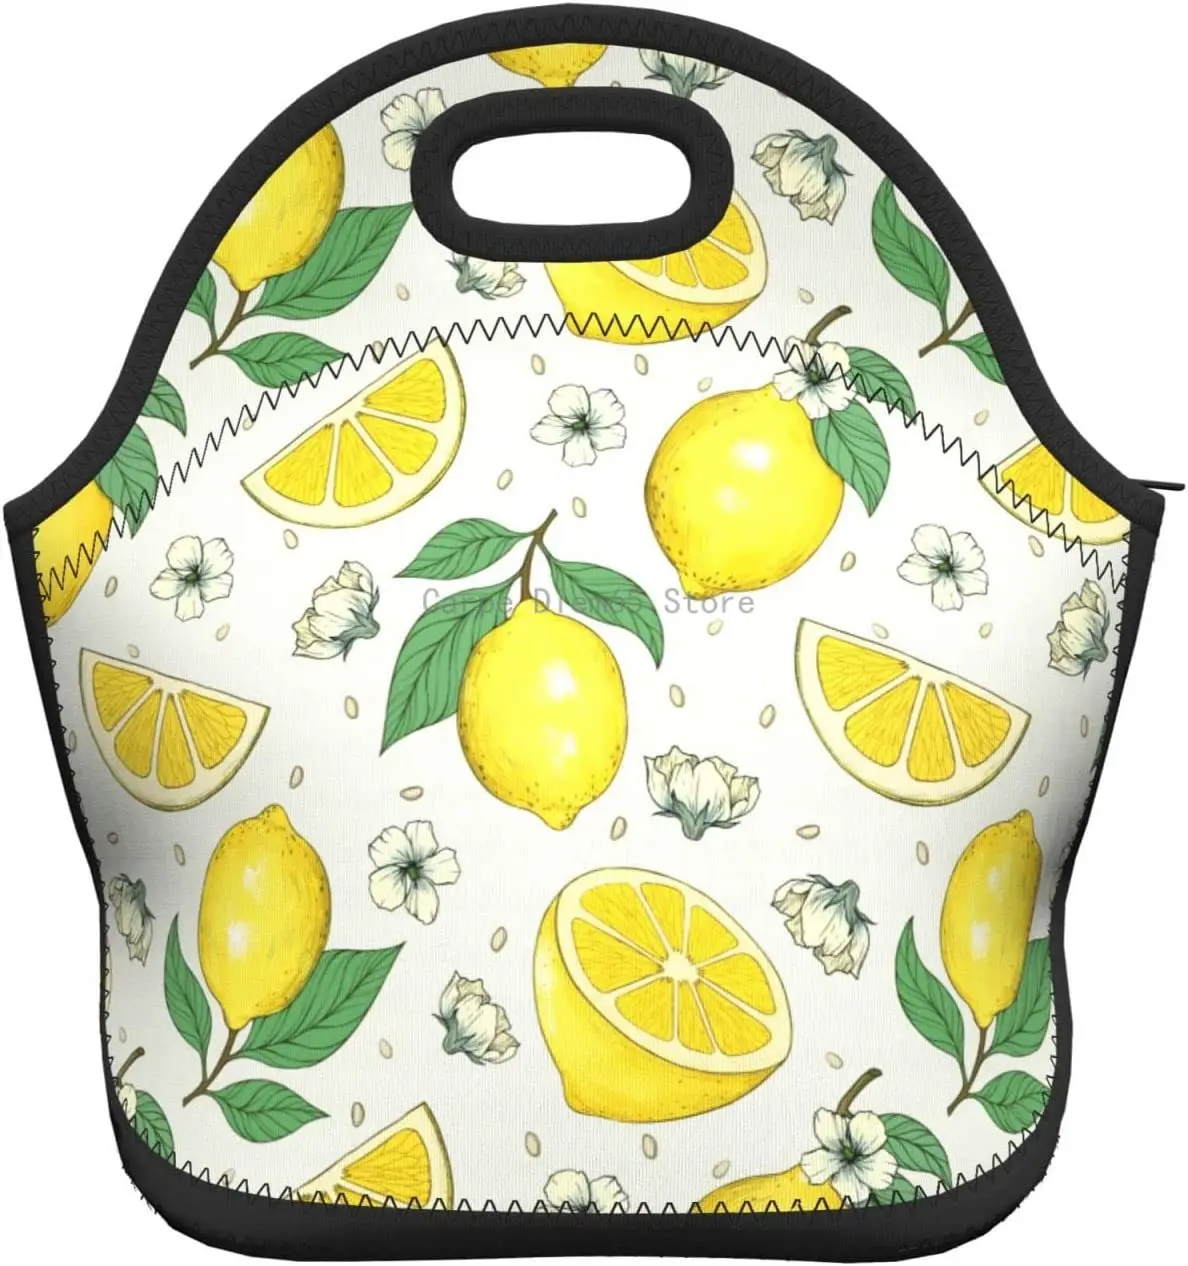 Lemons Изолированная неопреновая сумка для ланча, сумки для ланча, Переносной ланч-бокс, сумка-холодильник для ланча, сумка для пикника/катания на лодках/рыбалки/работы 0